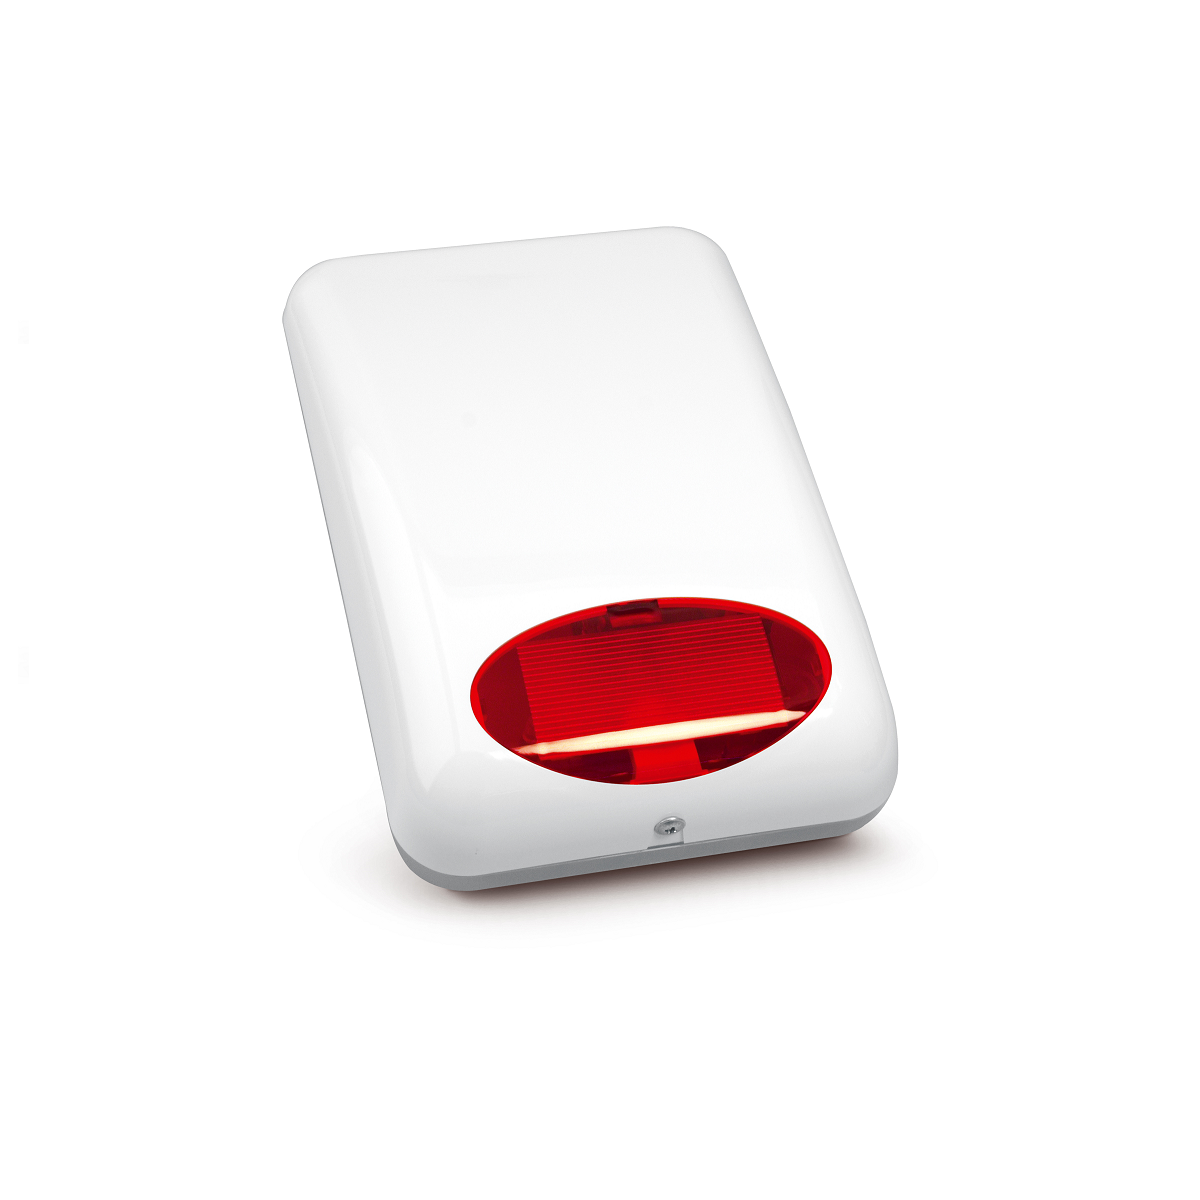 System alarmowy Satel Perfecta 16, 4 czujki ruchu, LCD, aplikacja mobilna - sygnalizator